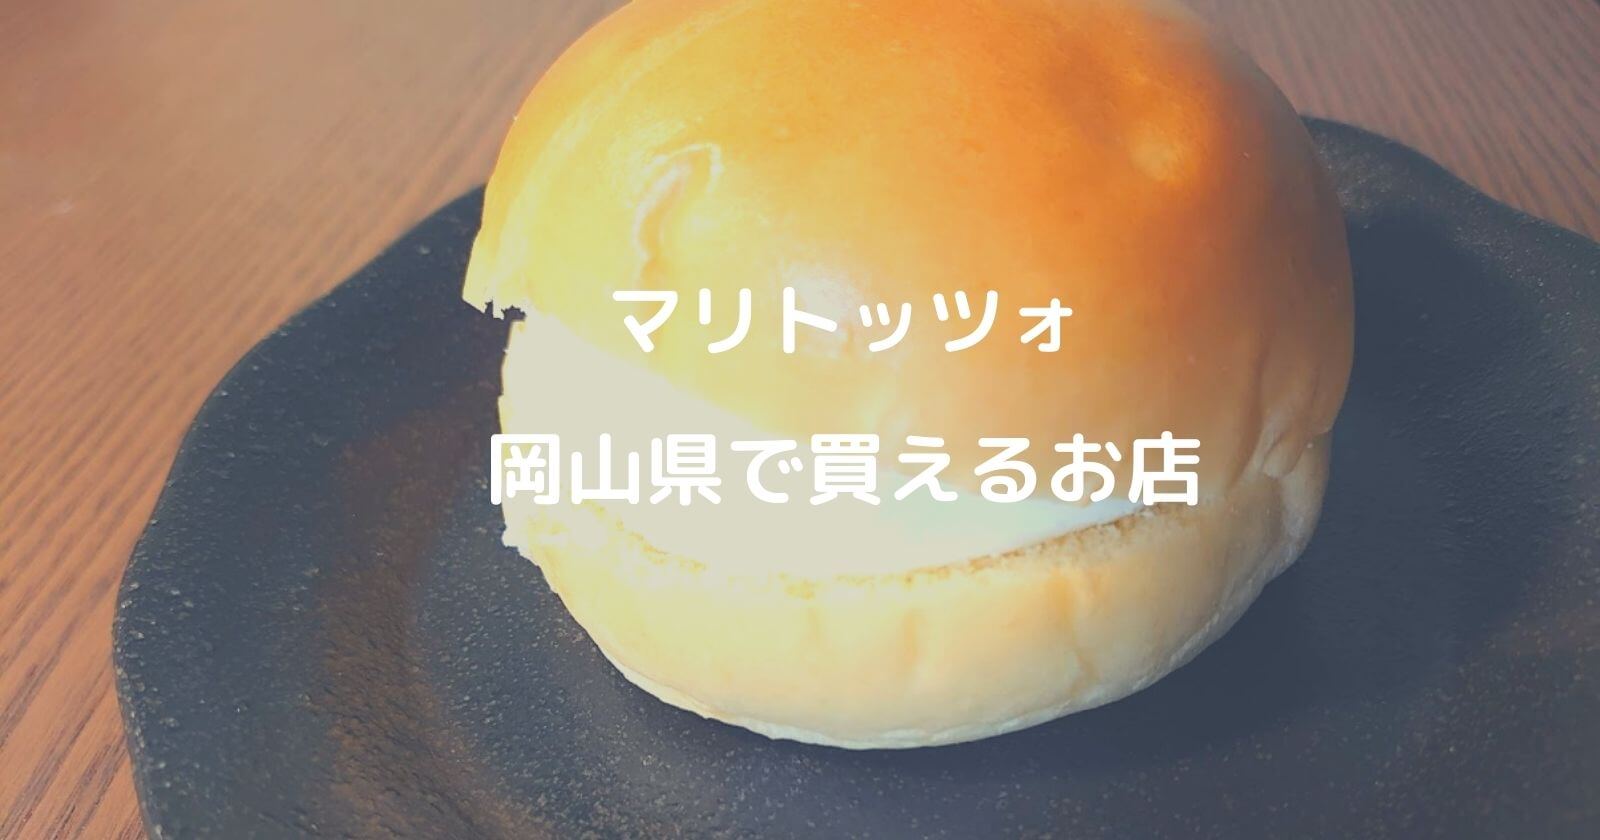 岡山県でマリトッツォが買える人気パン屋